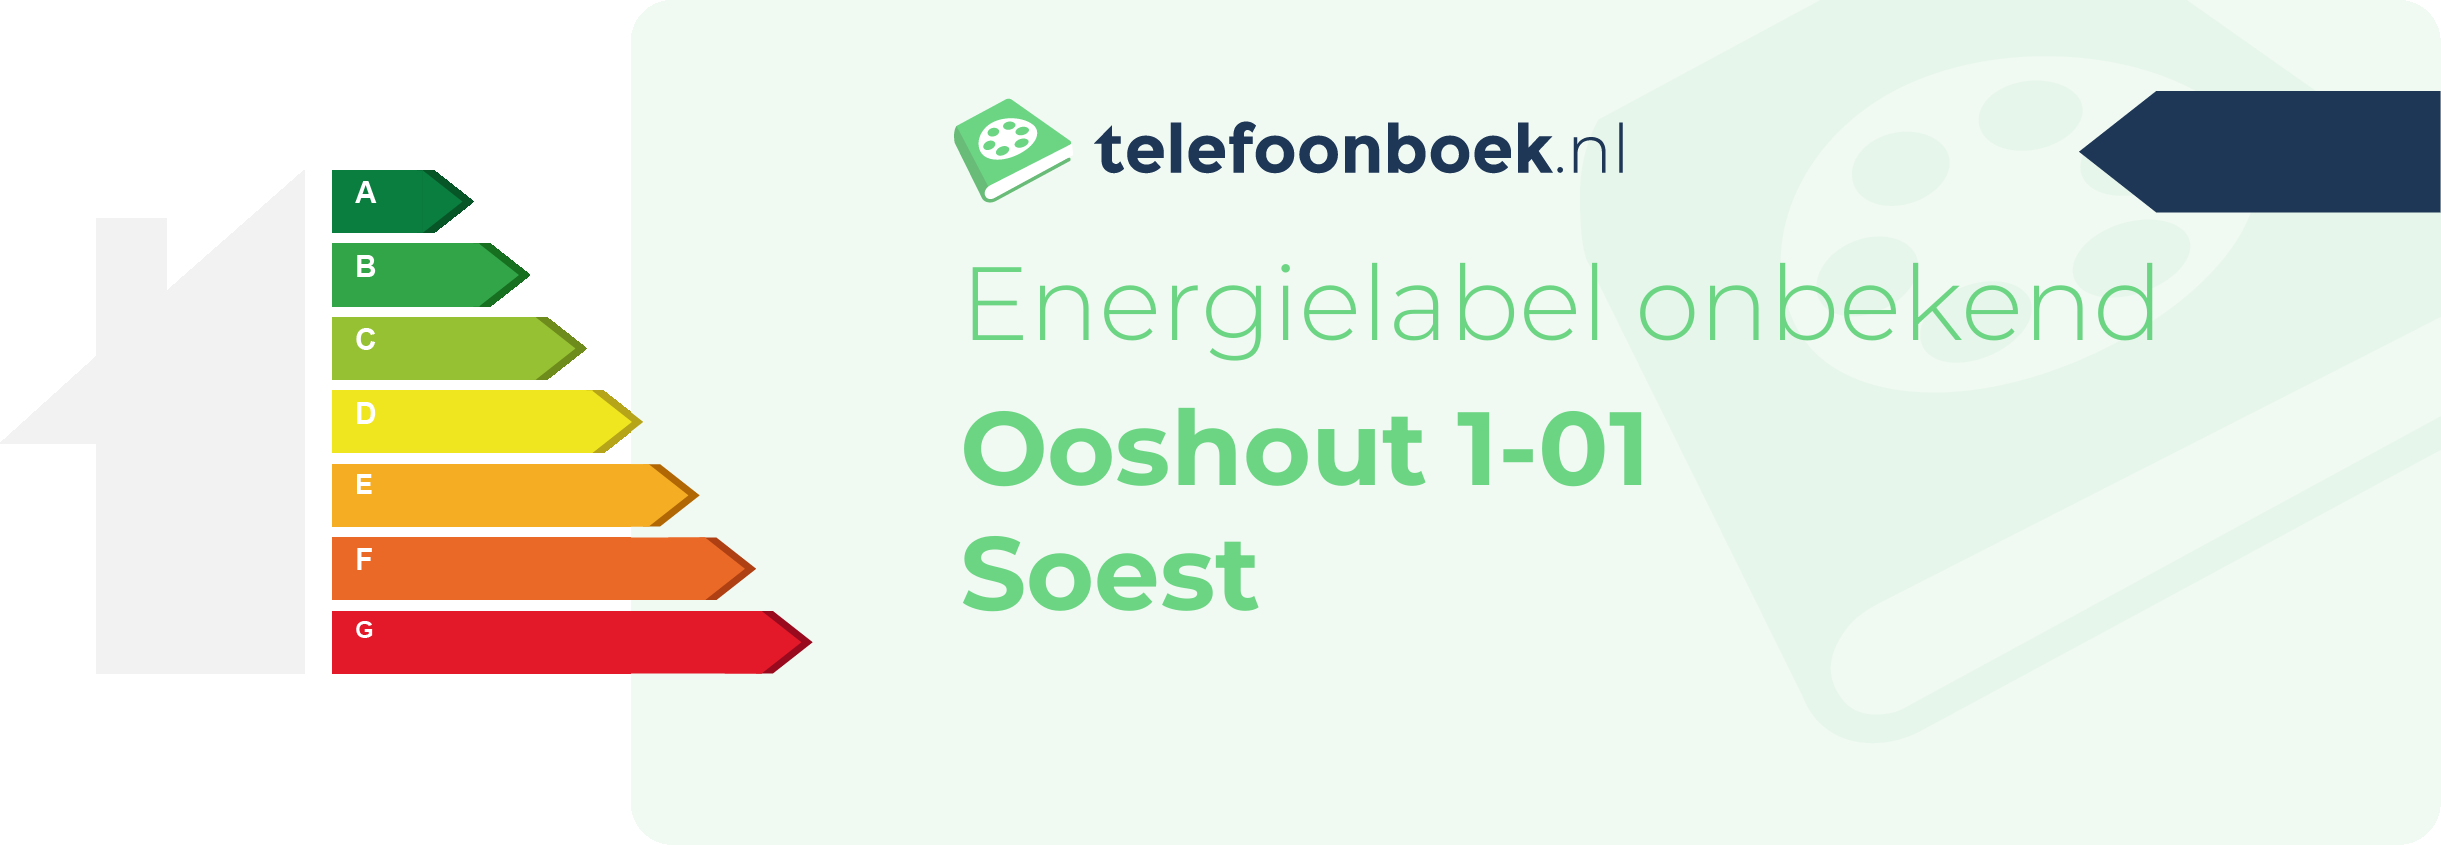 Energielabel Ooshout 1-01 Soest